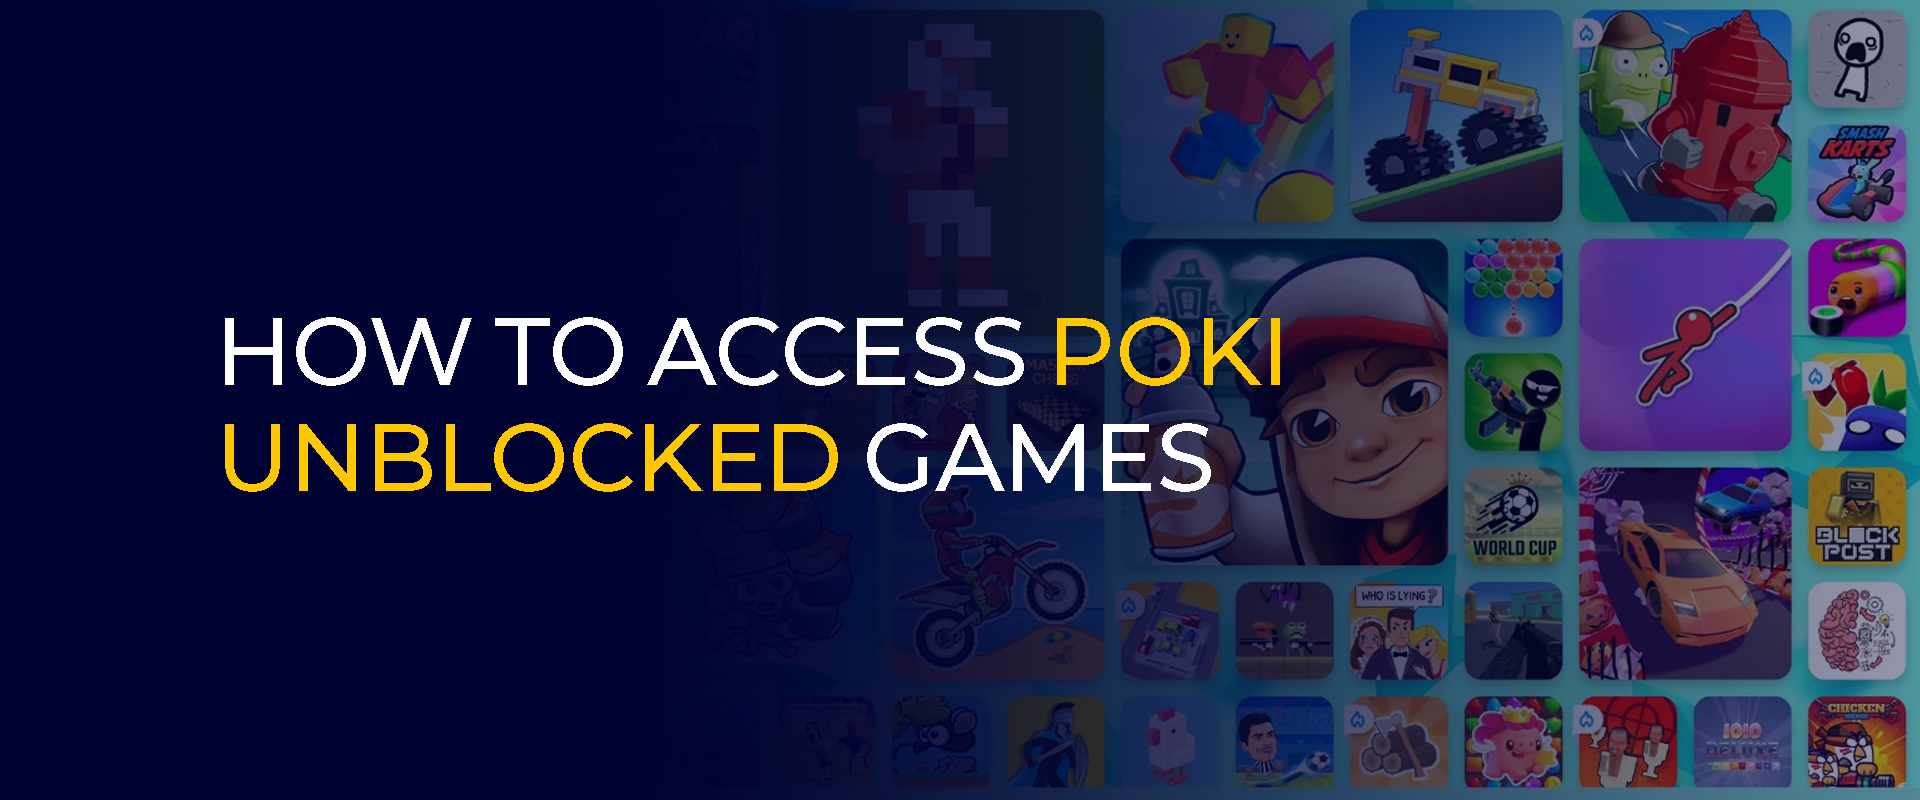 Comment accéder aux jeux Poki débloqués